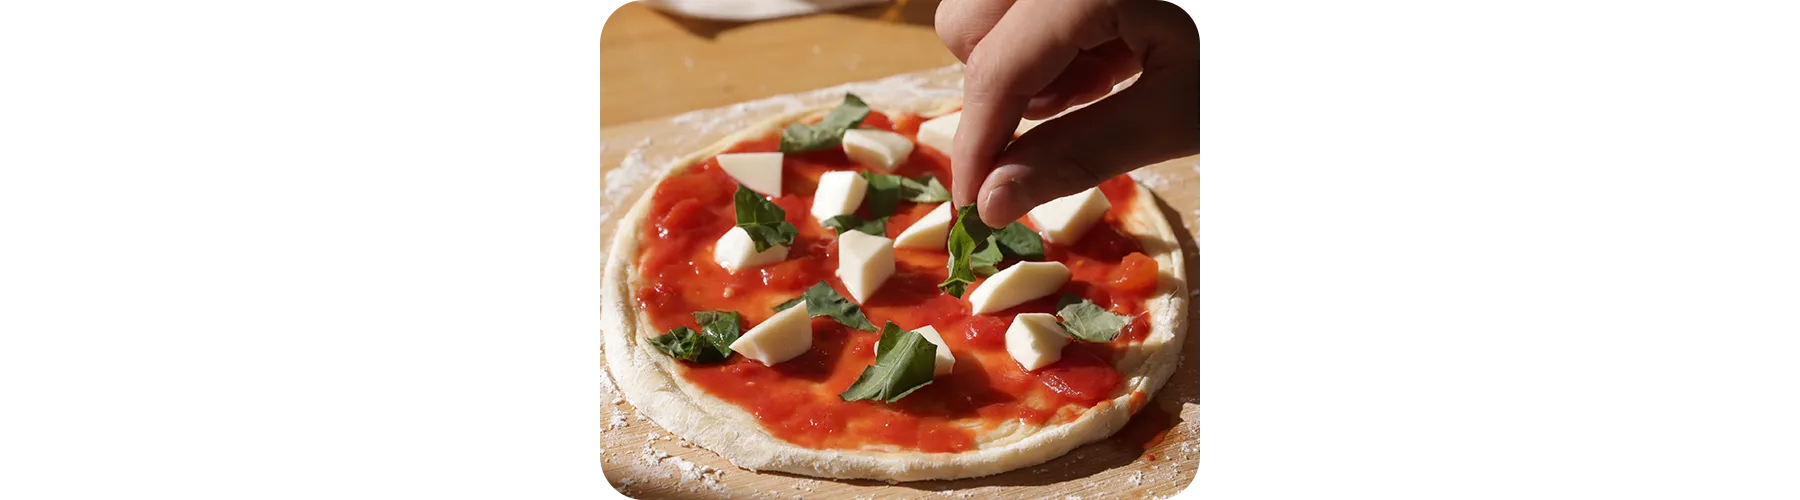 トマトベースのオーソドックスなマルゲリータピザ